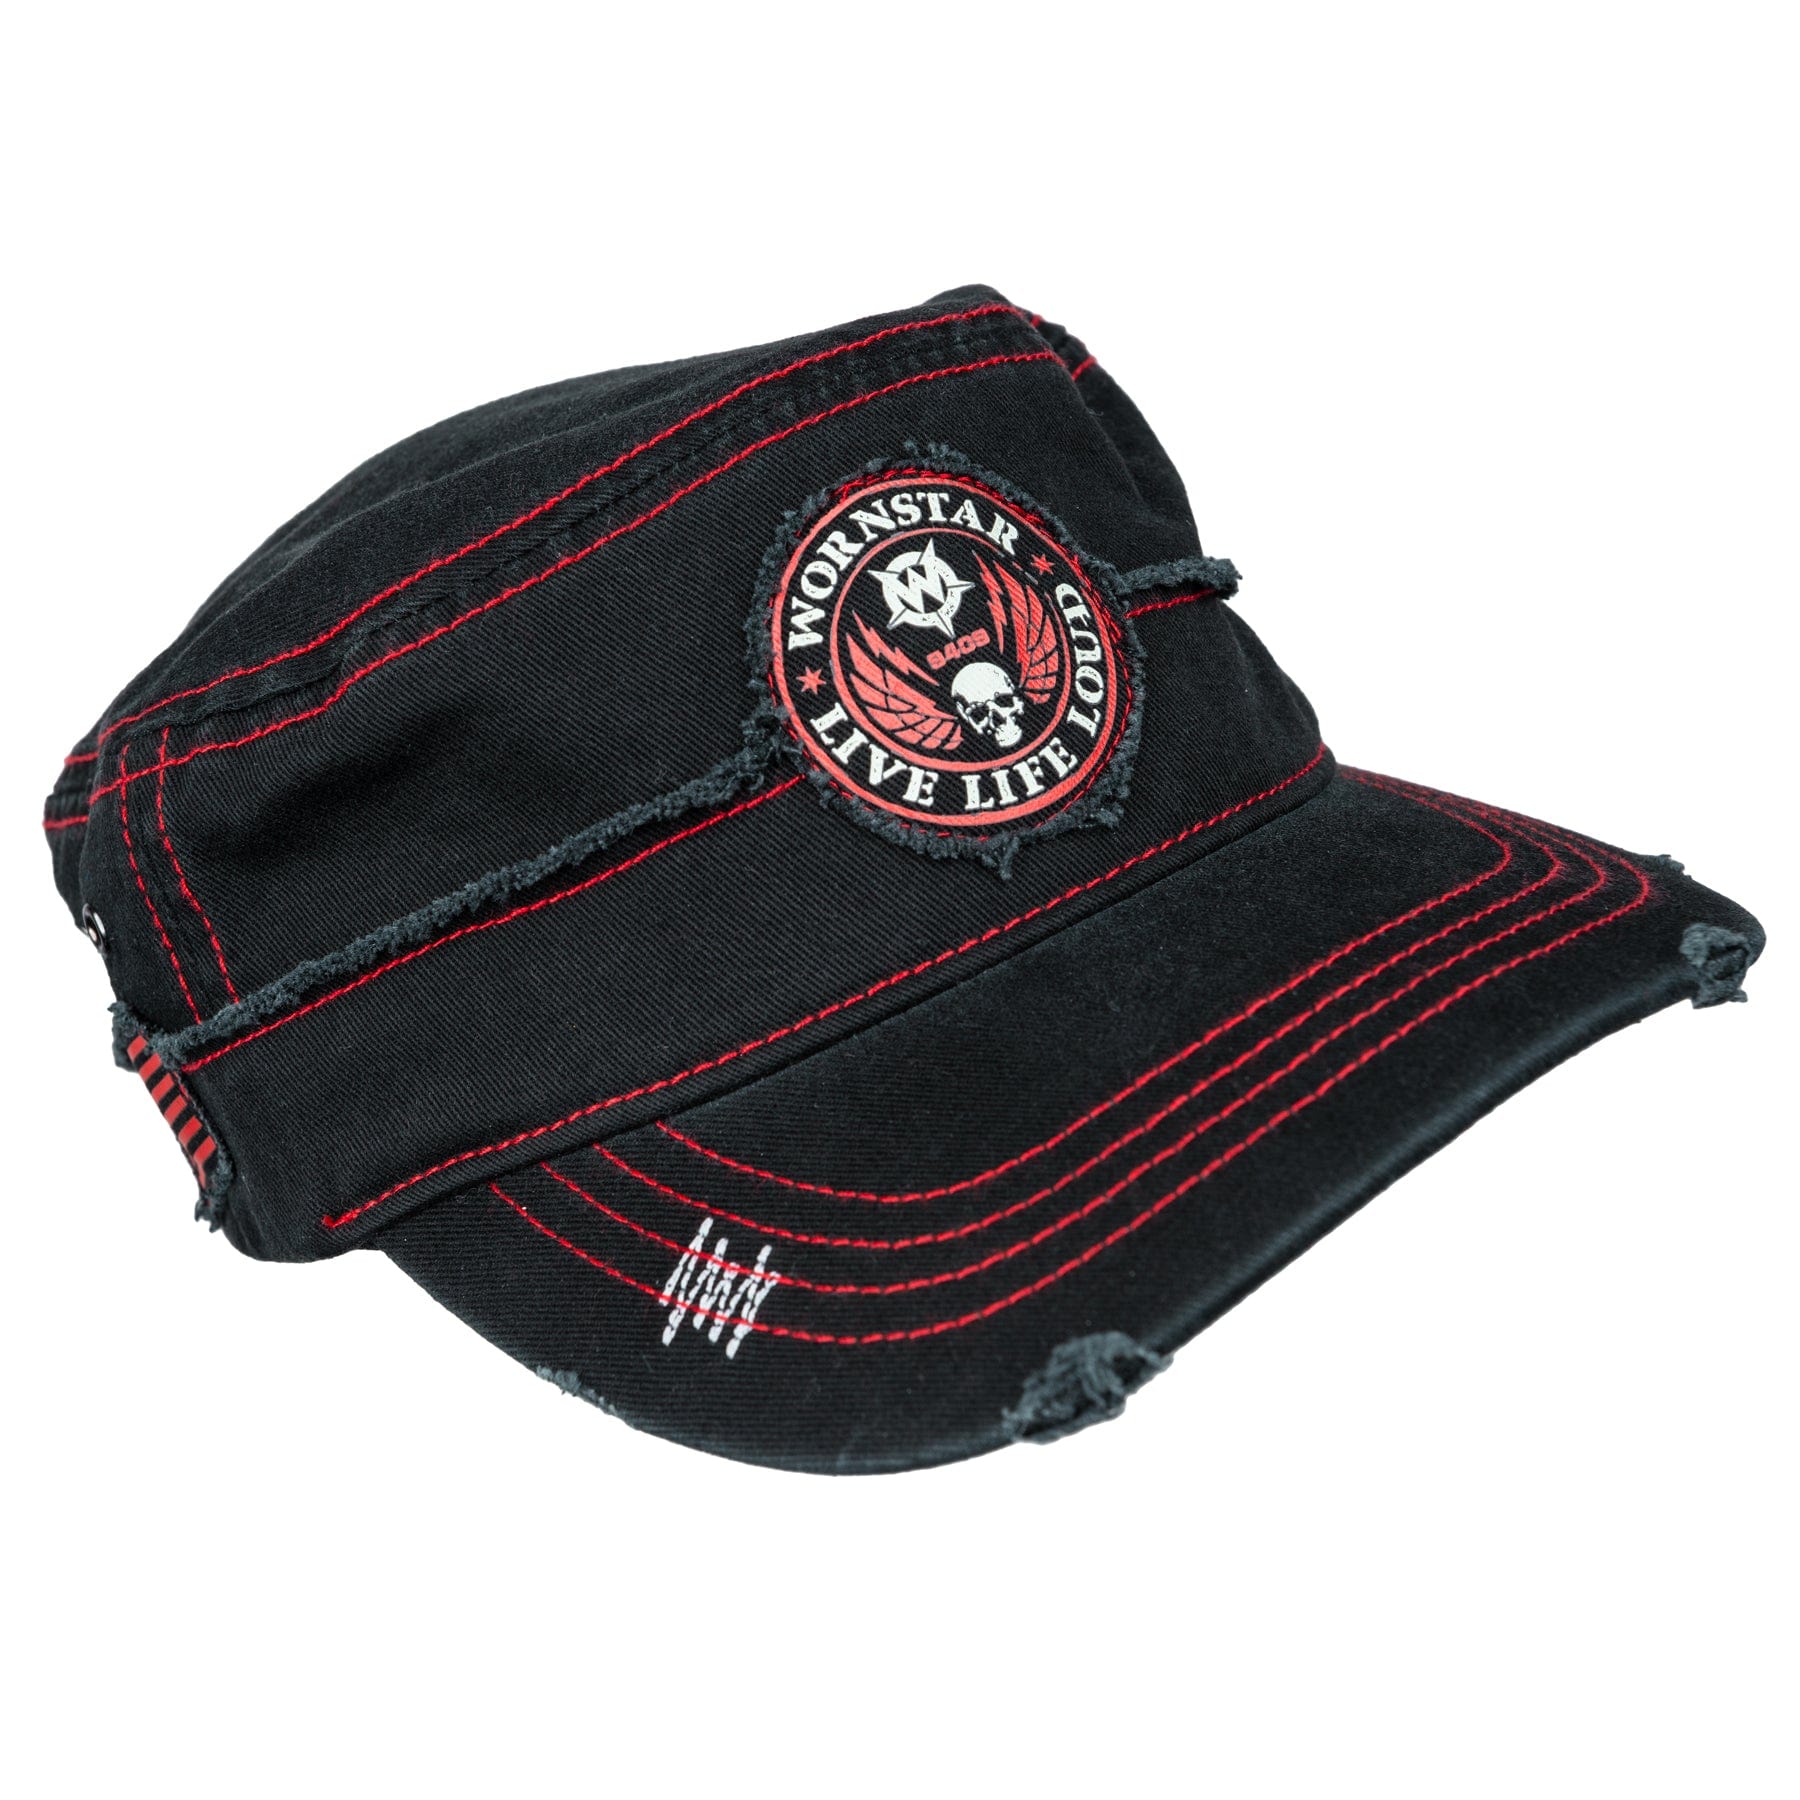 Wornstar Swag Hat Bloodline Cadet Hat